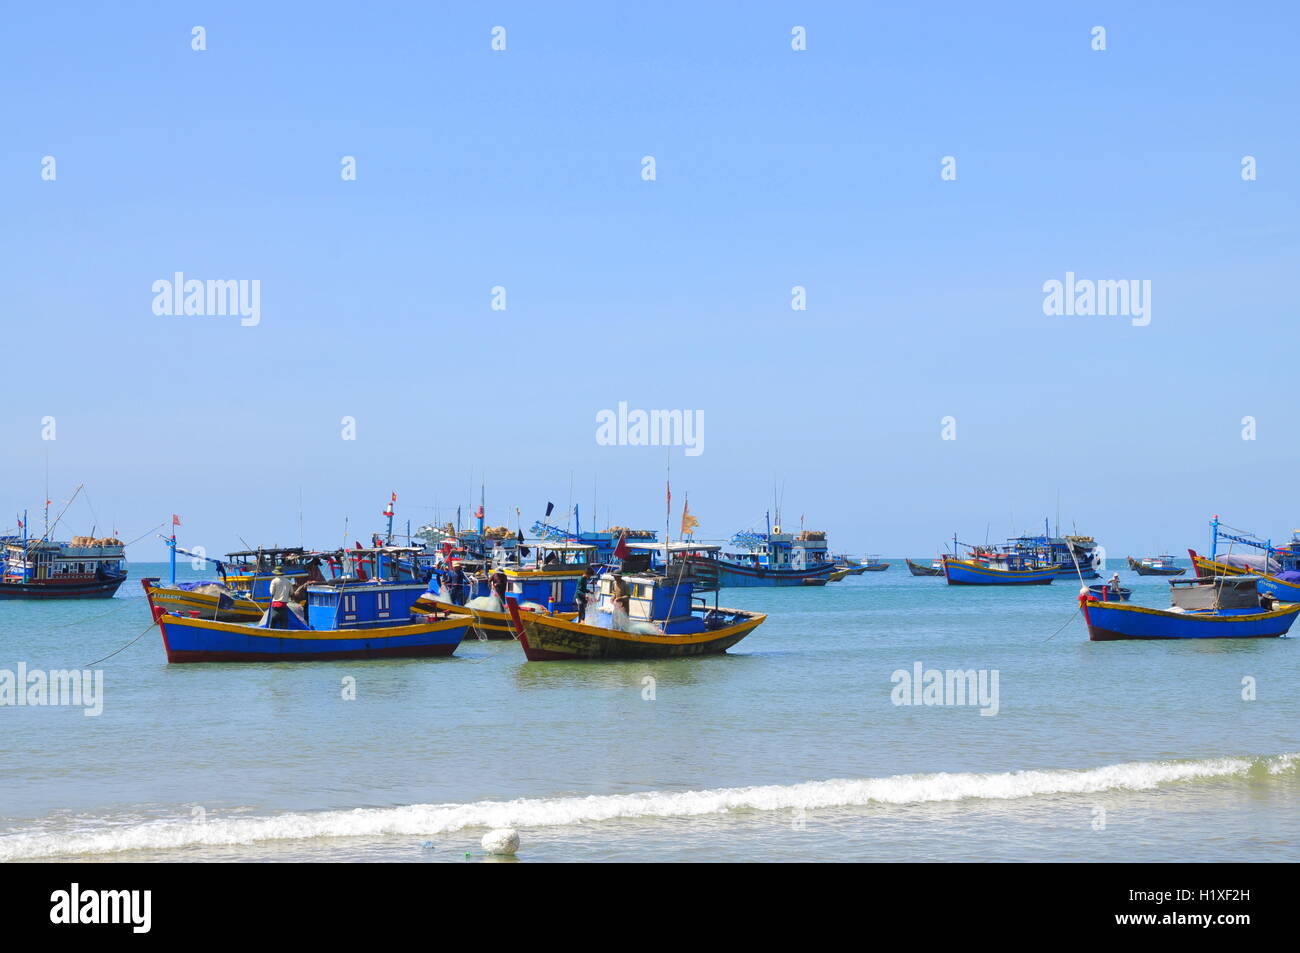 Lagi, Vietnam - 26 Février 2012 : les bateaux de pêche locaux sont dans l'amarrage Lagi beach Banque D'Images